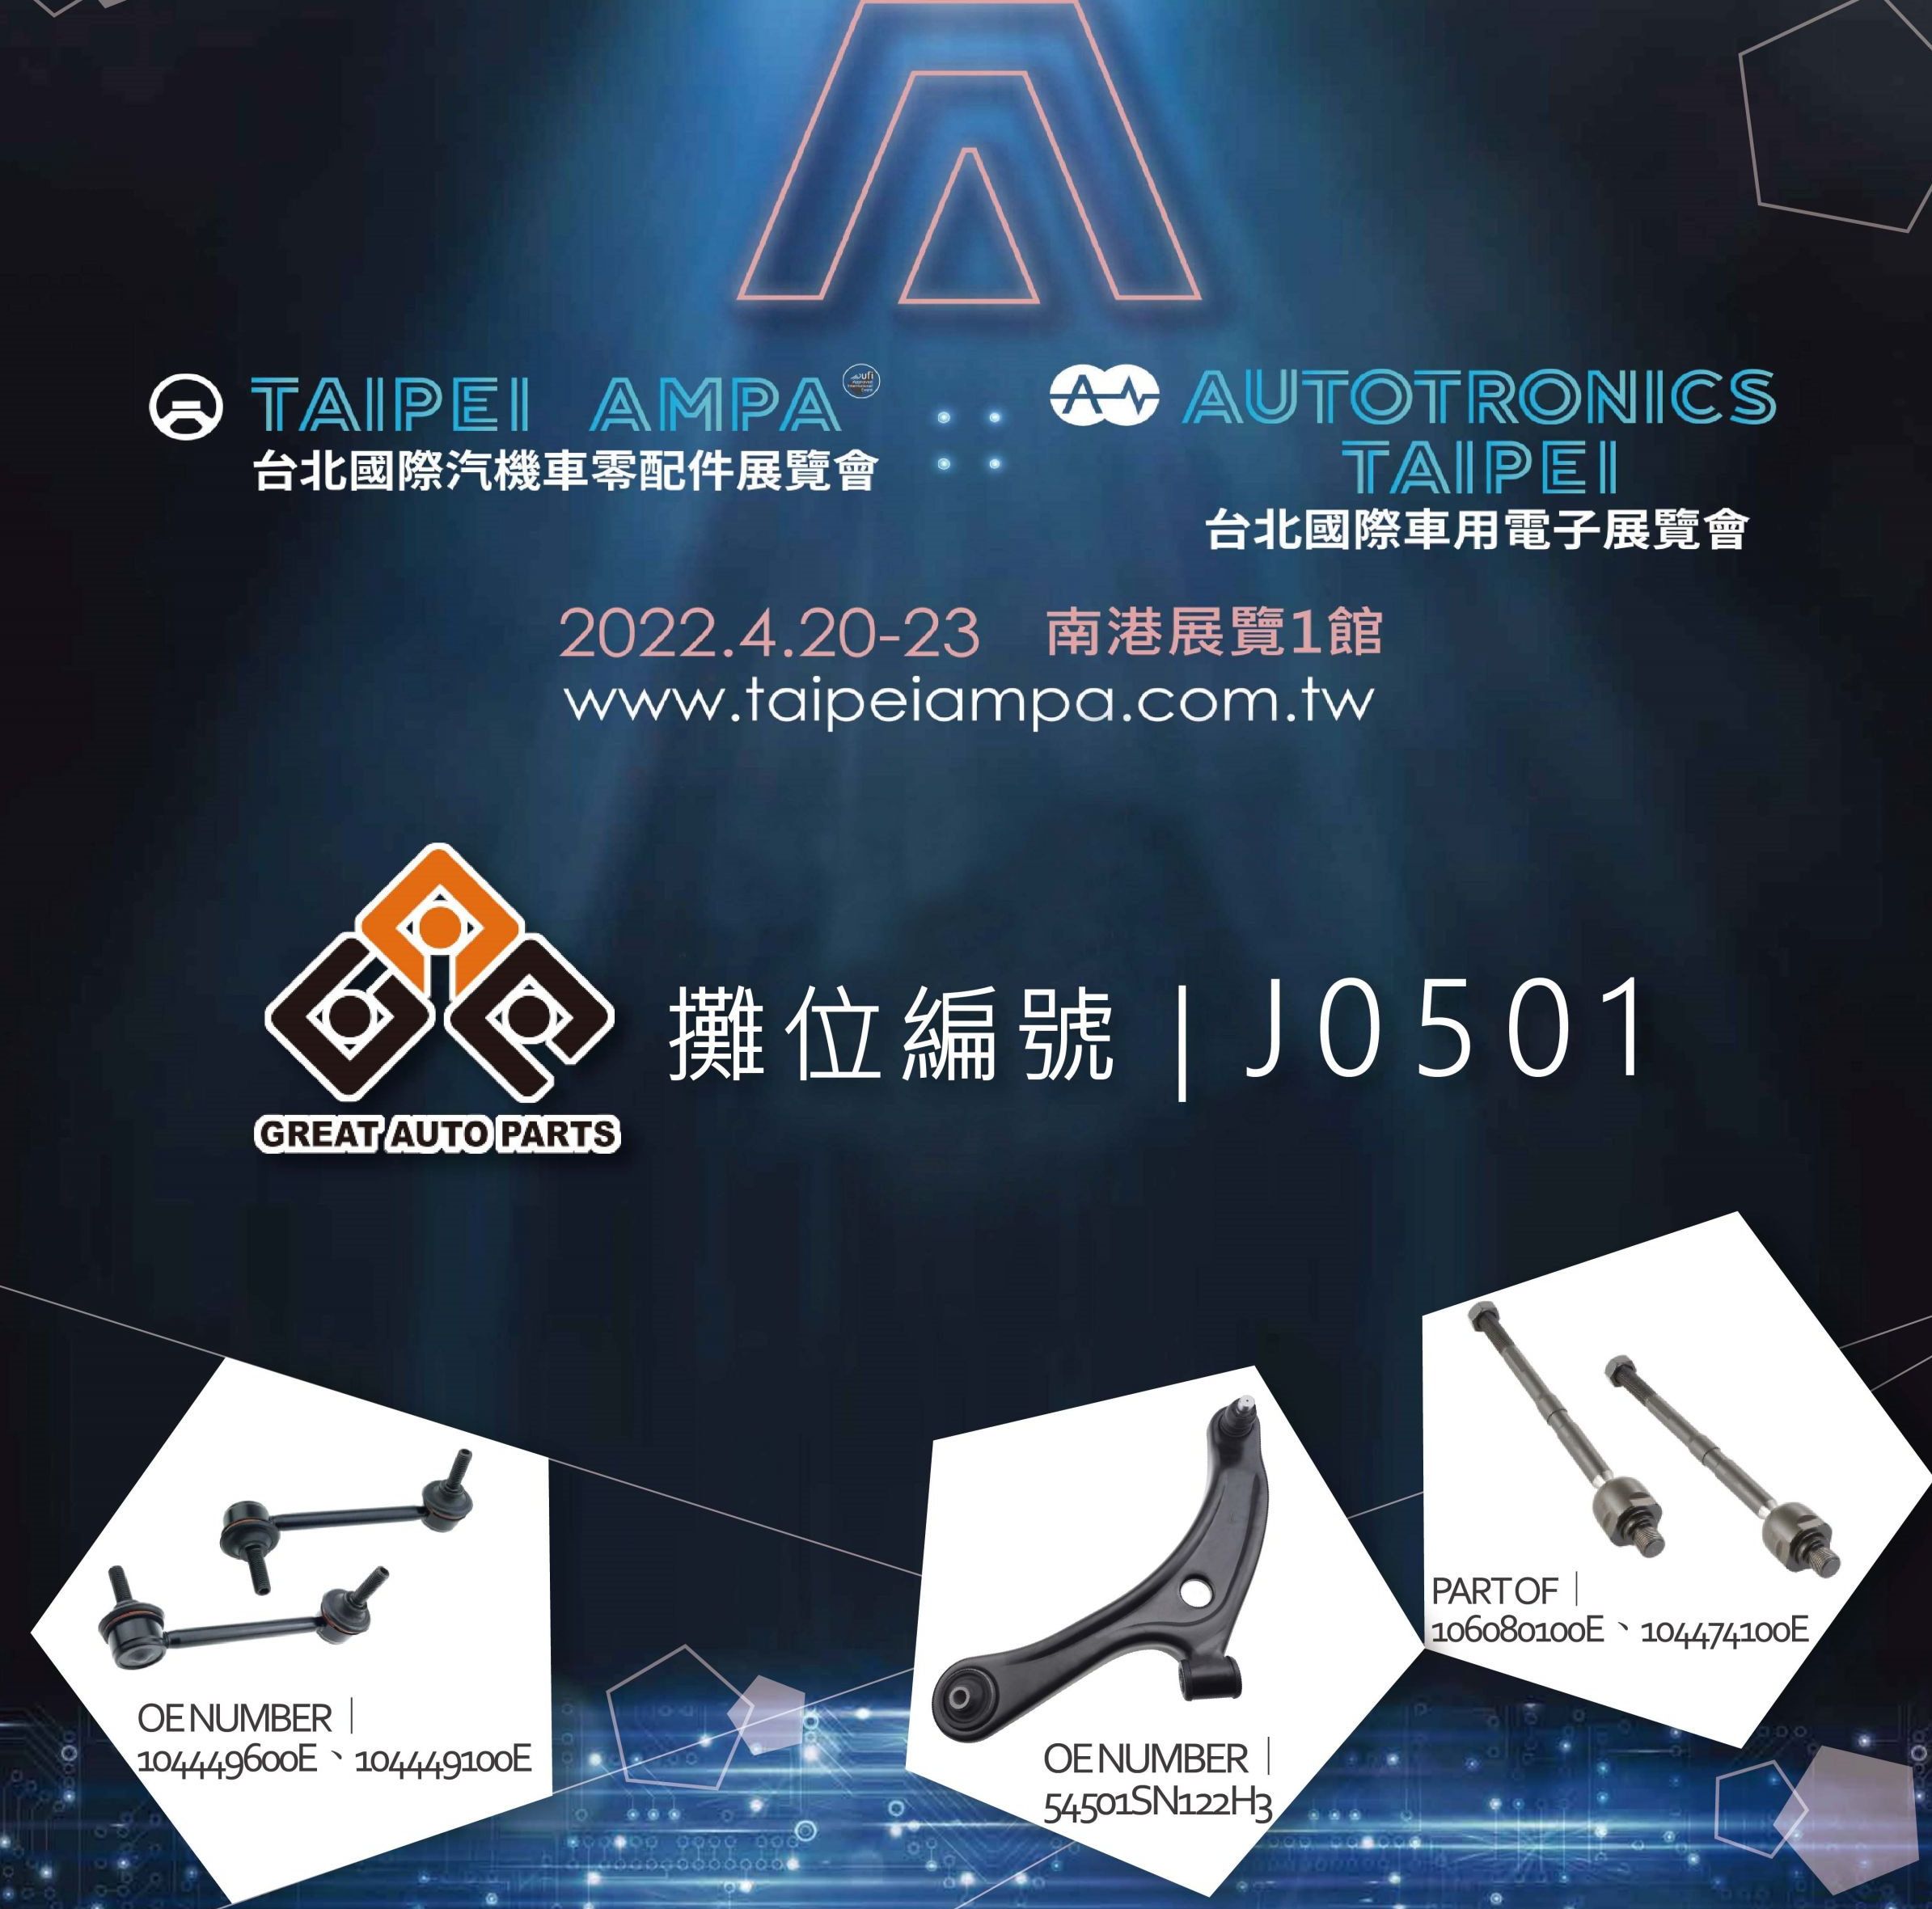 Taipei AMPA 2022 (Great Auto Parts)